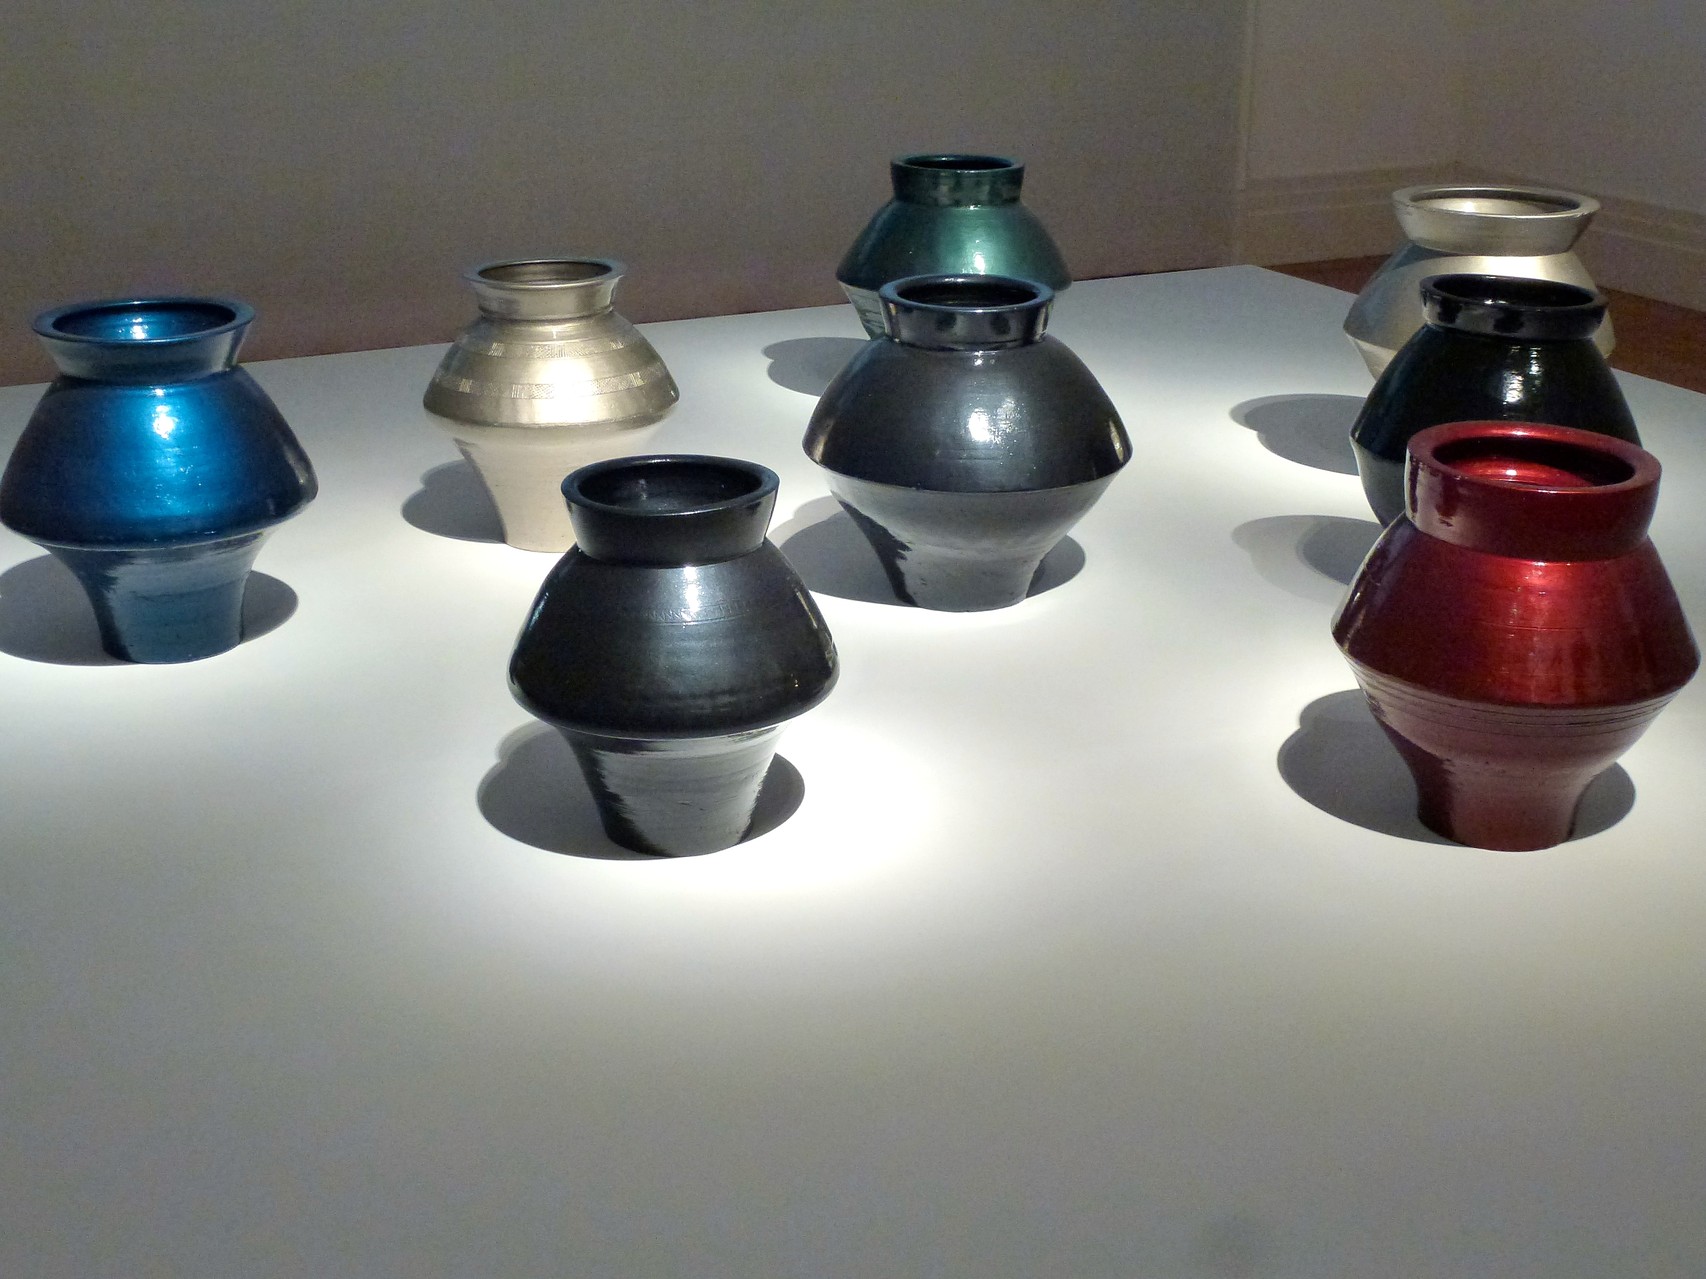 Han Dynasty Vases with Auto Paint (Vasen der Han Dynasty mit Autolack von Mercedes_1)